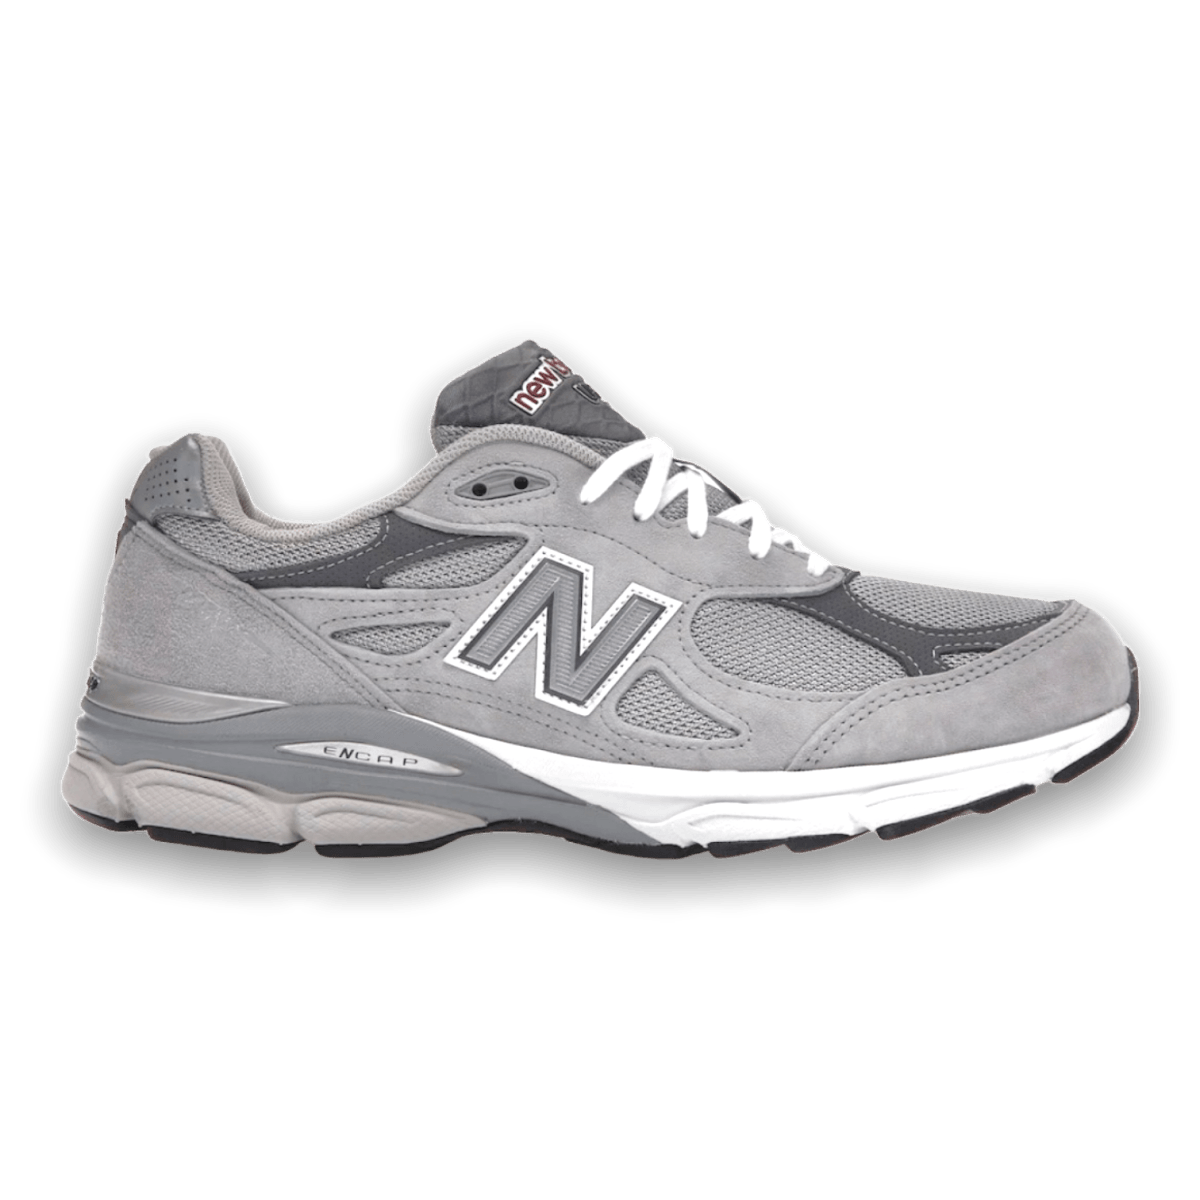 New Balance 990v3 Grey (2019/2021) - Low Sneaker - Jawns on Fire Sneakers & Streetwear